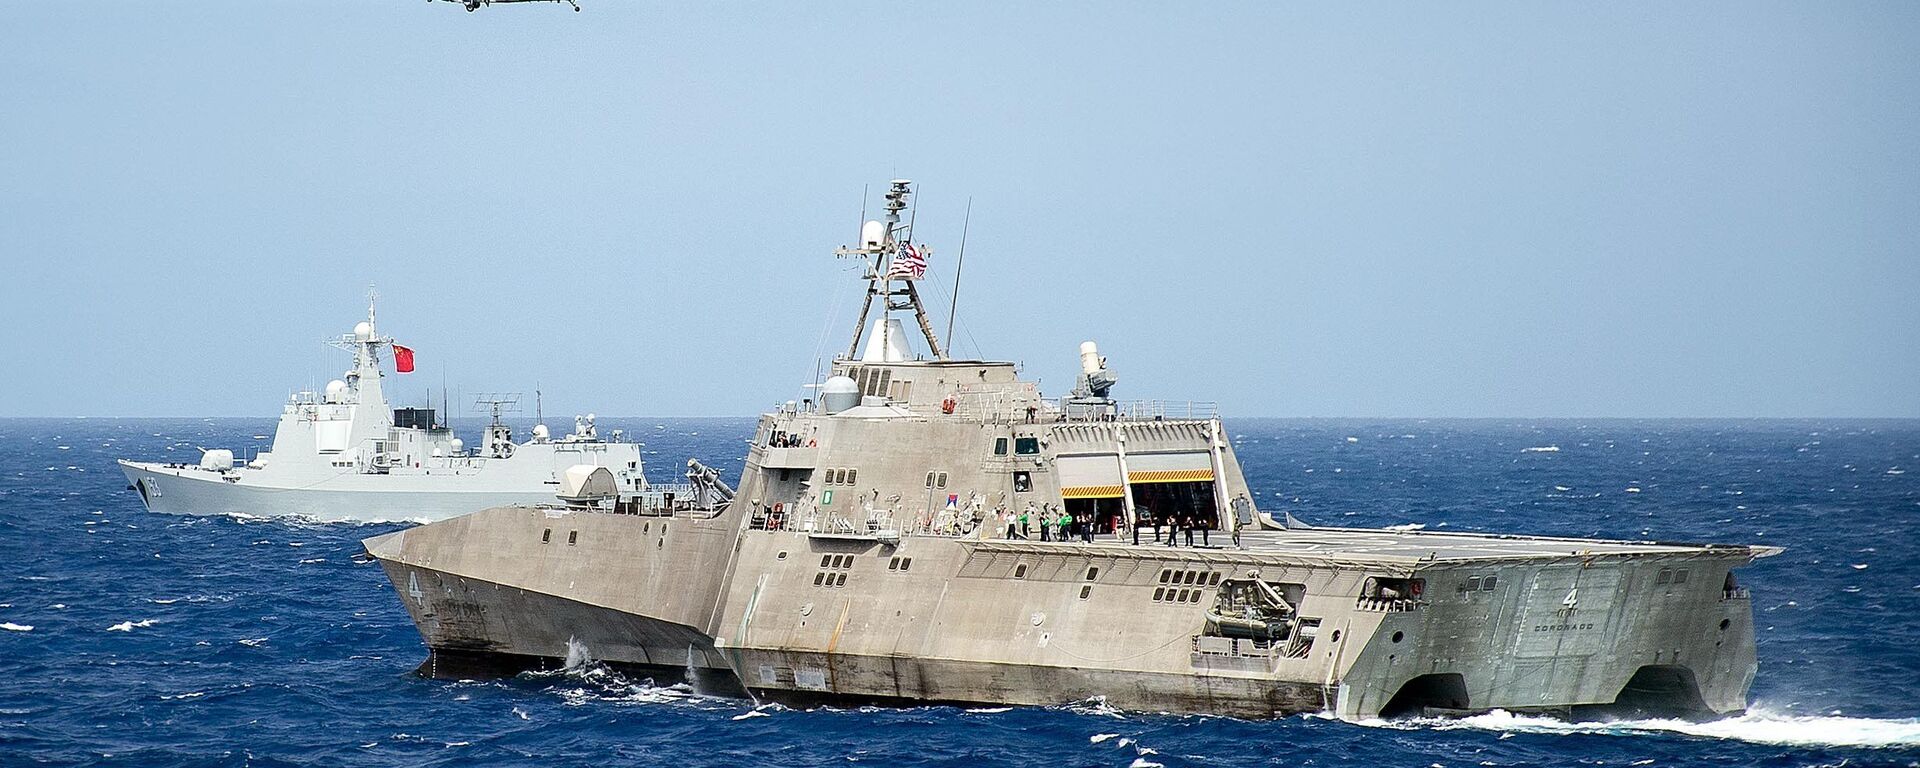 Tàu Hải quân Mỹ LCS Coronado trong cuộc tập trận ở khu vực châu Á - Thái Bình Dương trên Thái Bình Dương. 2016 tháng 7. - Sputnik Việt Nam, 1920, 15.08.2023